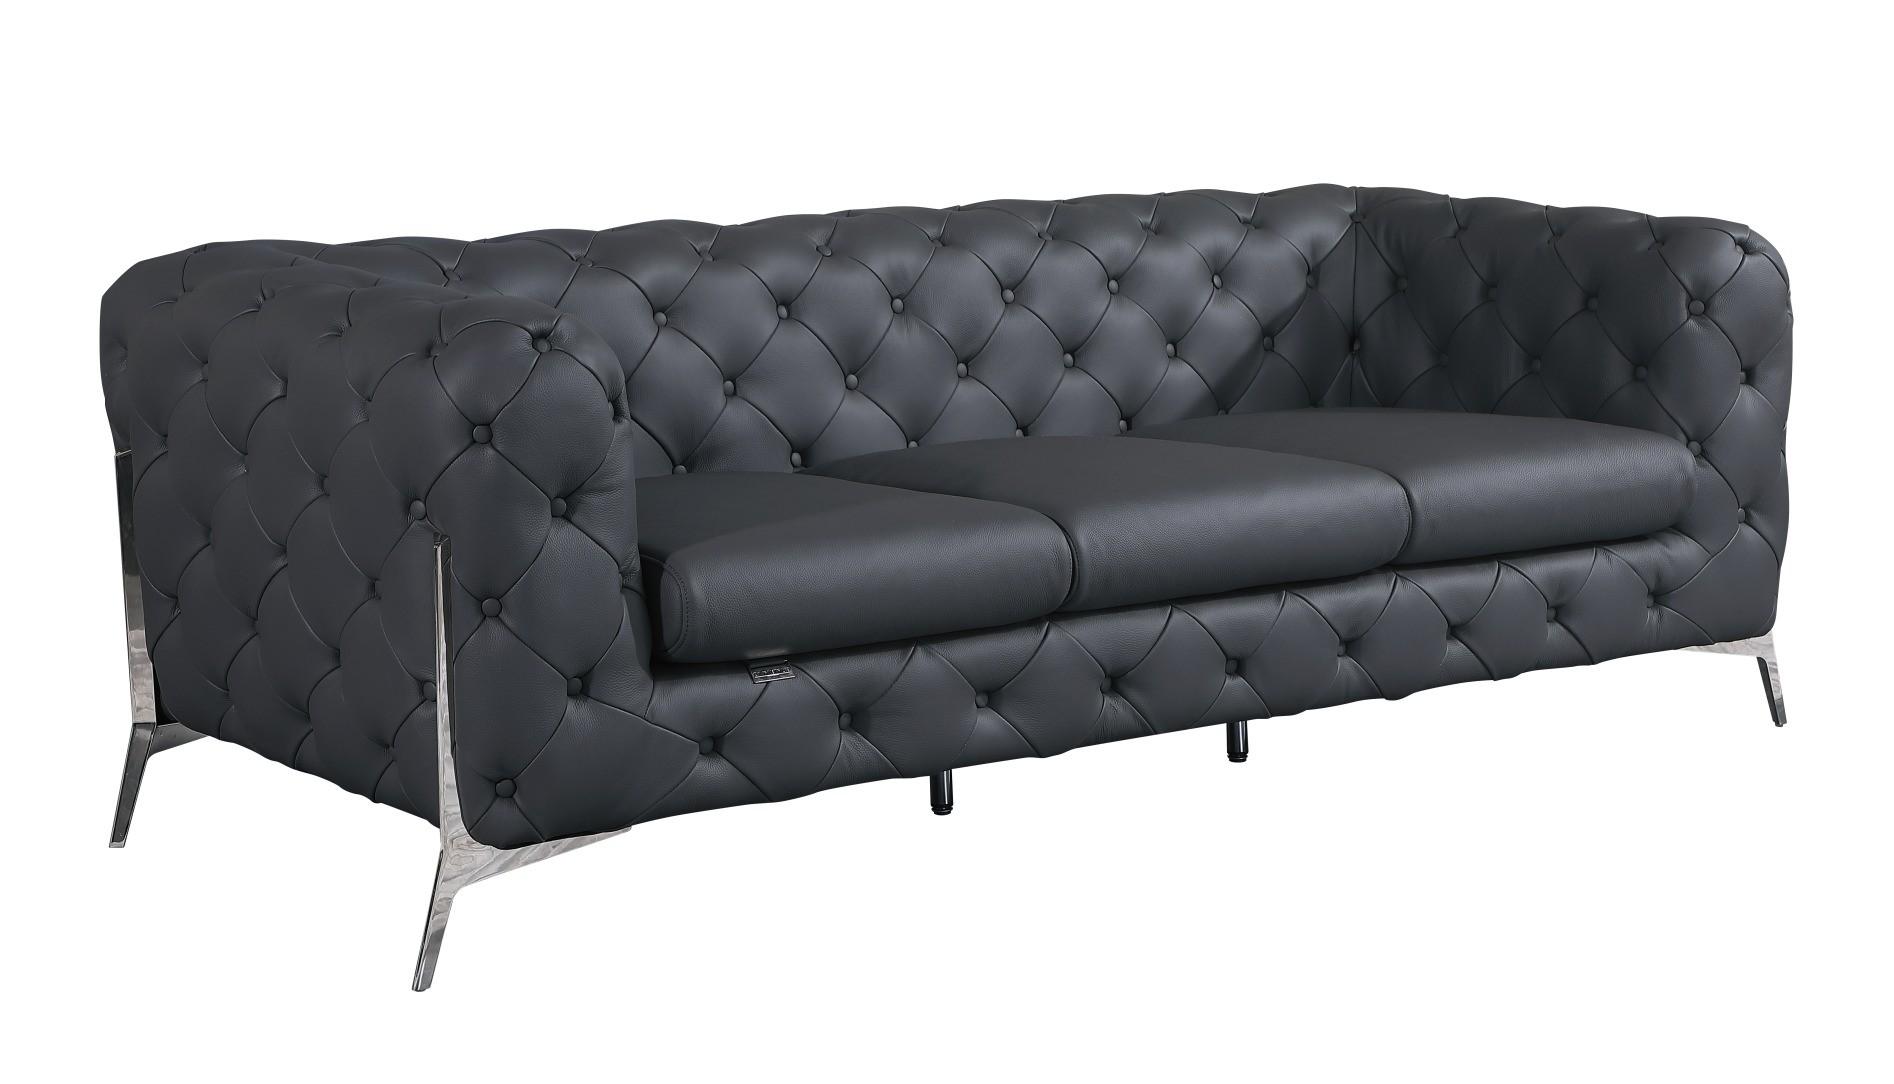 Contemporary Sofa 970 970-DK_GRAY-S in Dark Gray Top grain leather